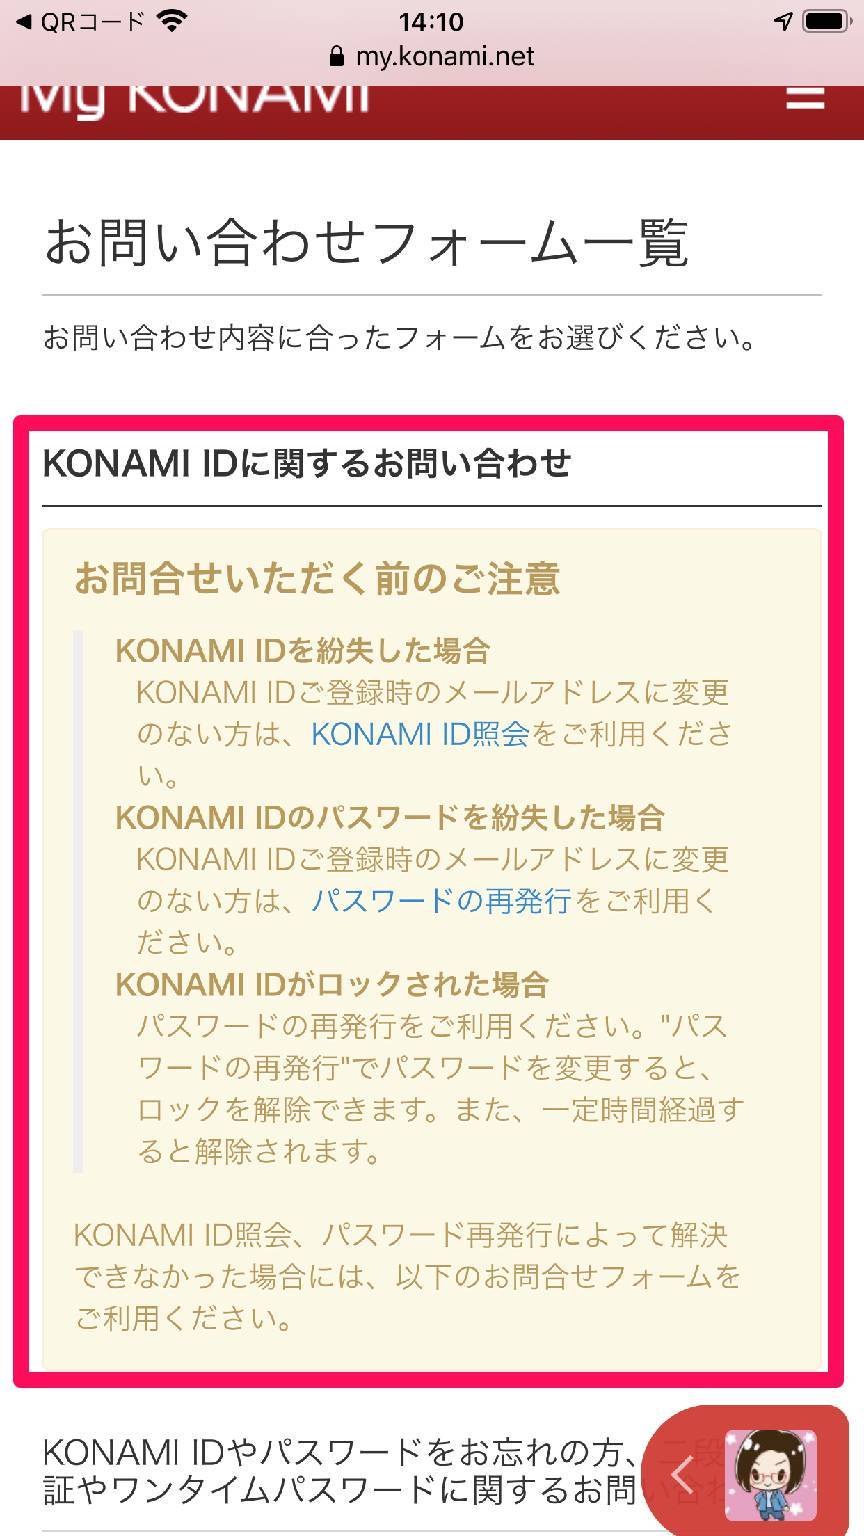 KONAMI ID カスタマーサポート トップ